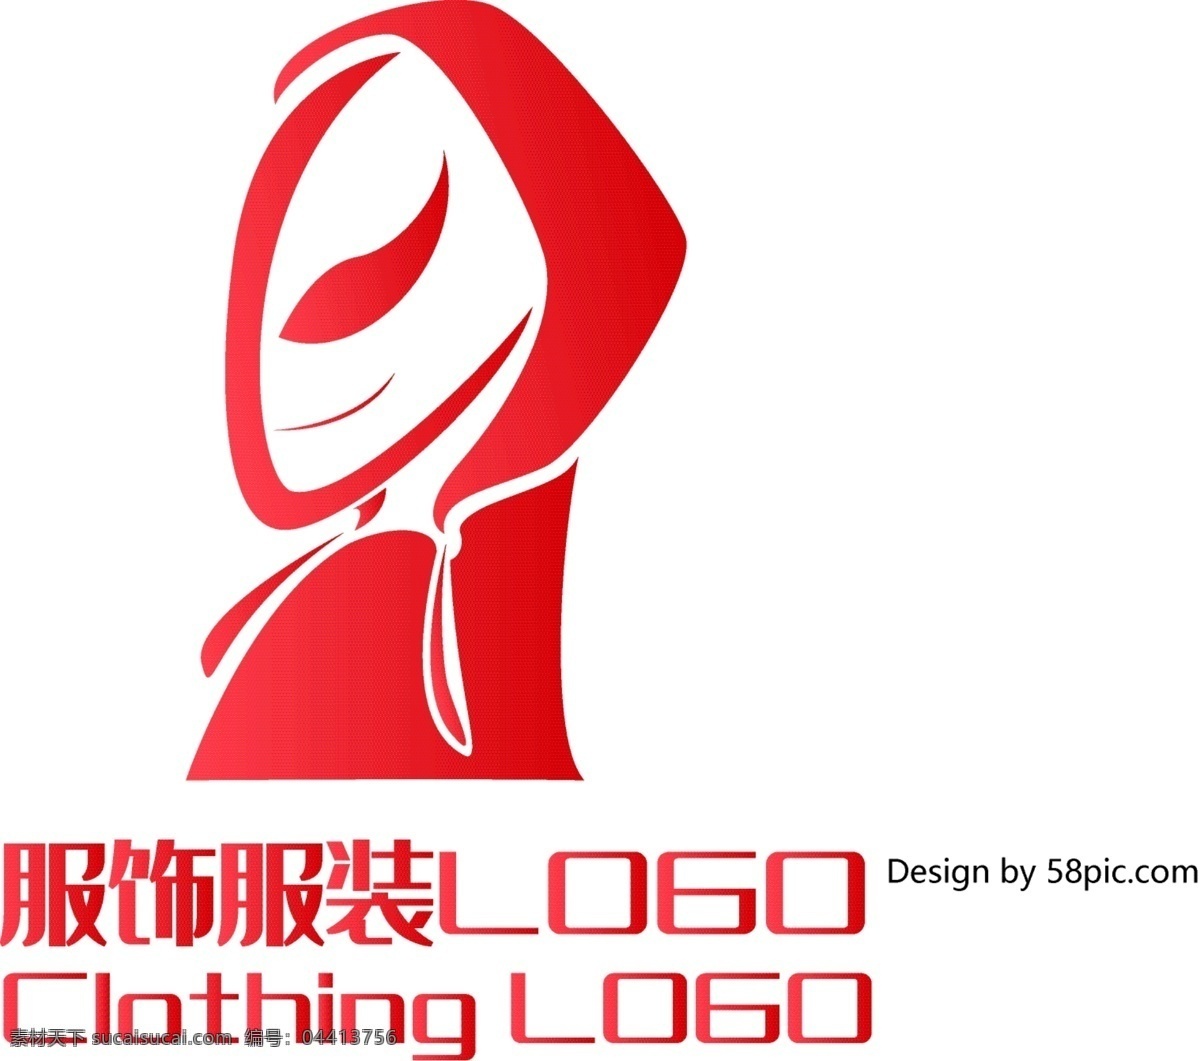 原创 简约 e 字 外星人 潮流服饰 服装 logo 可商用 创意 字体设计 潮流 服饰 标志